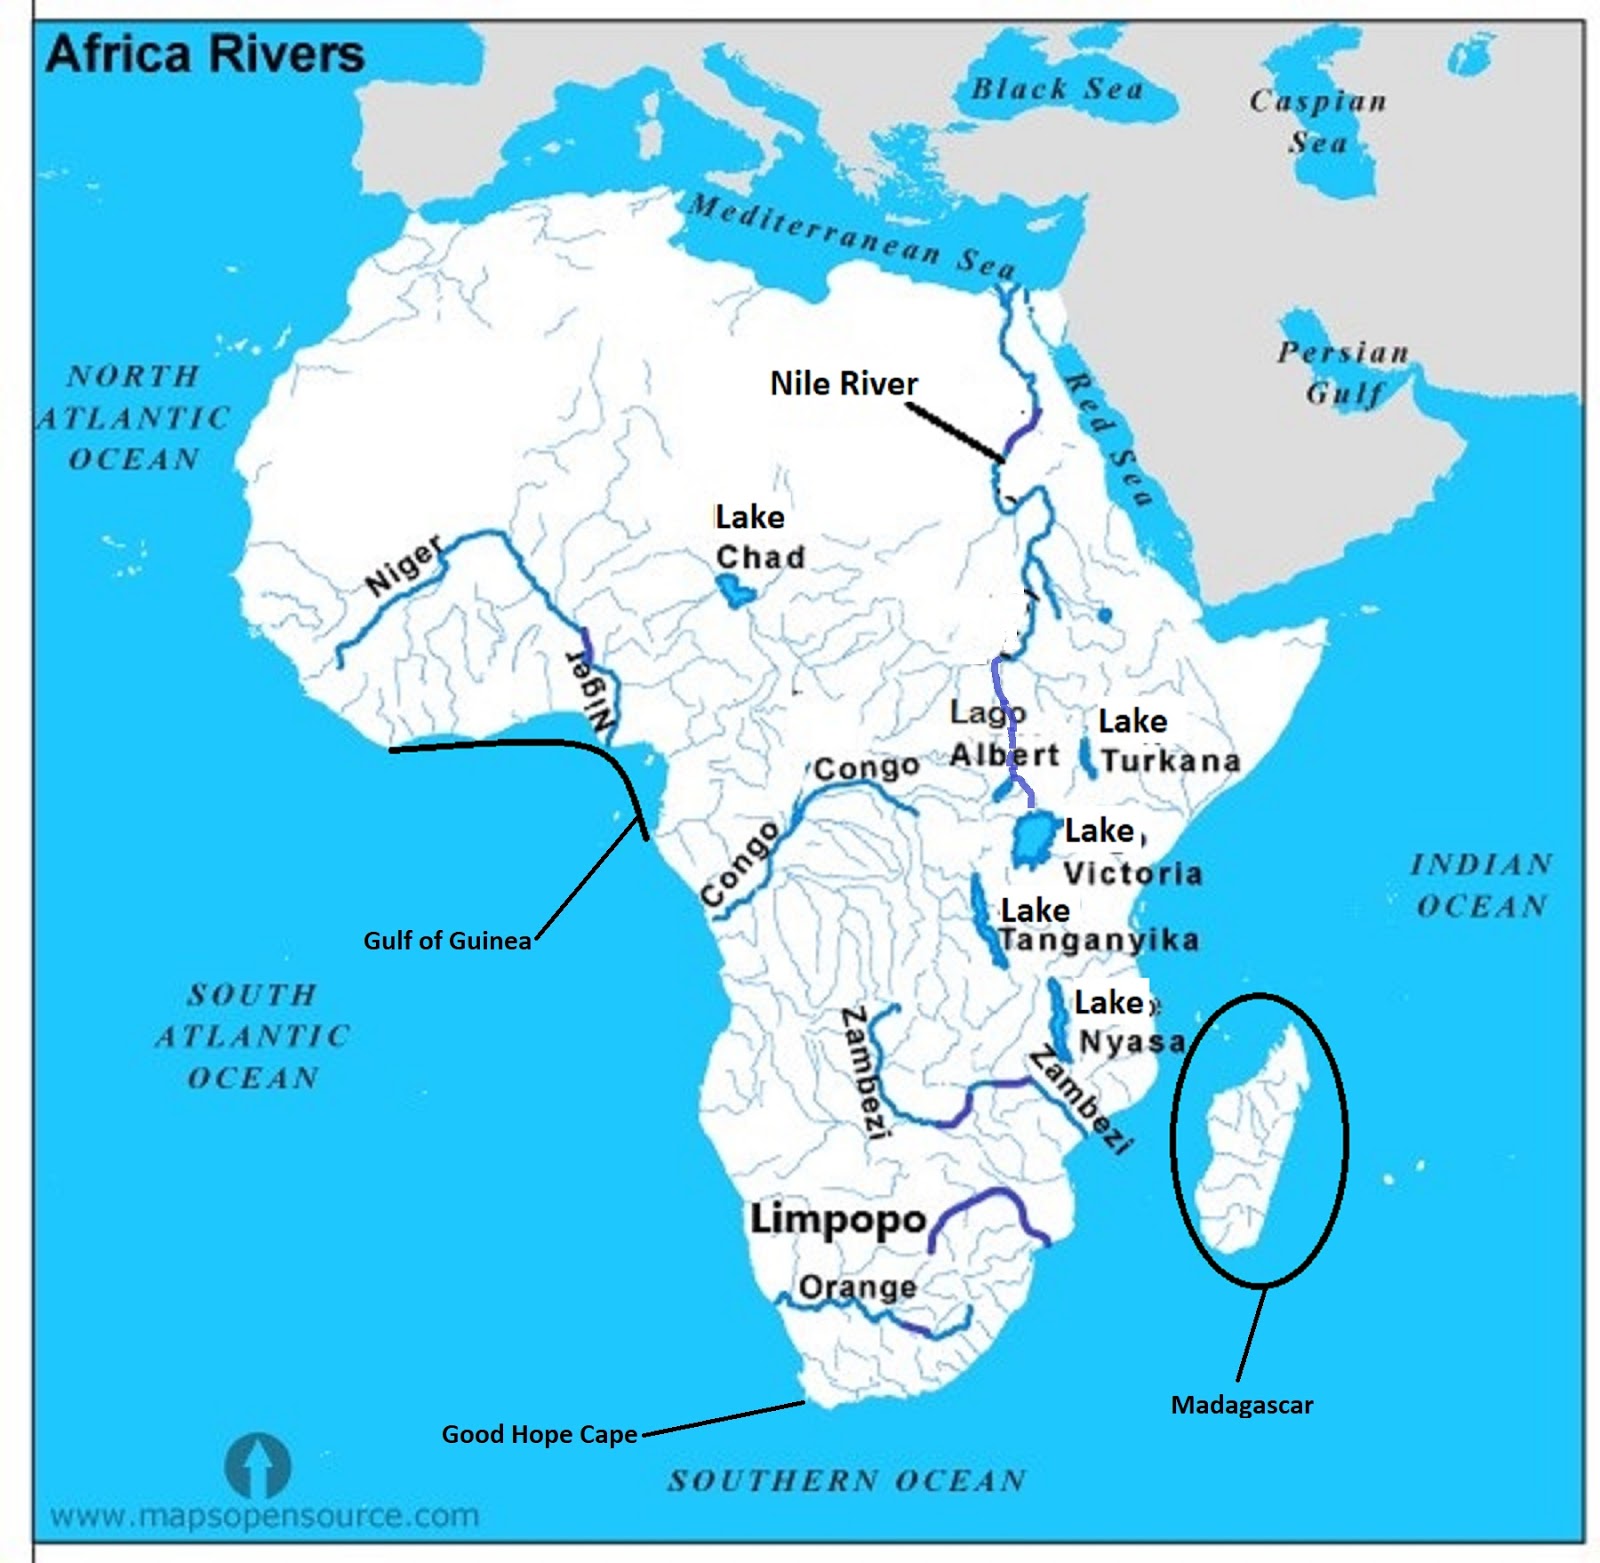 Как называется африканская река изображенная на карте. Реки и озера Африки на карте. Реки Африки на карте Африки. Крупные реки и озера Африки на карте. Крупные реки и озёра Африки на контурной карте.